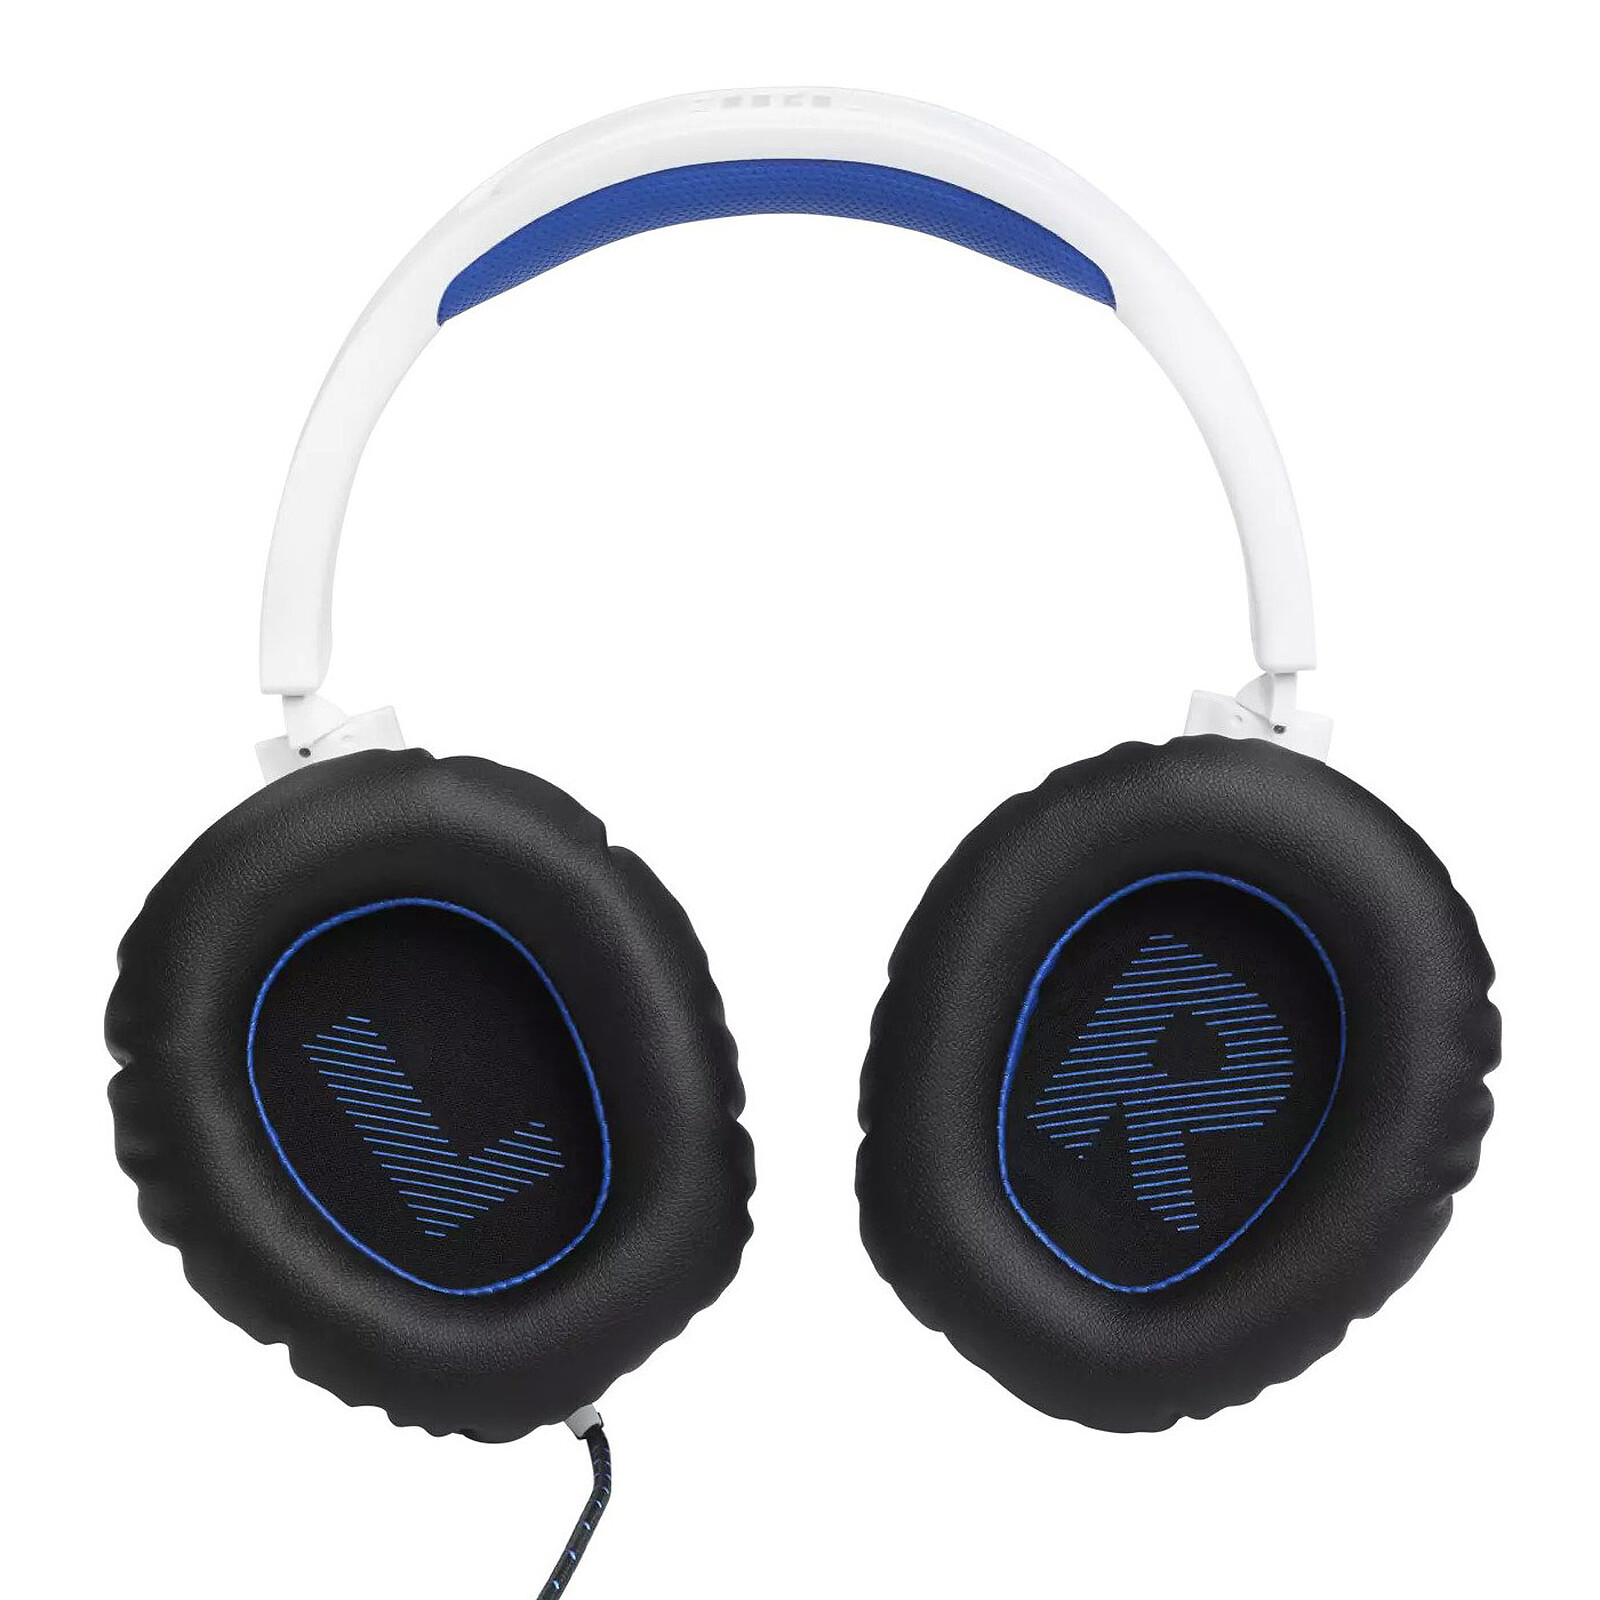 JBL Quantum 100 auriculares de juegos superiores con cable (azul)